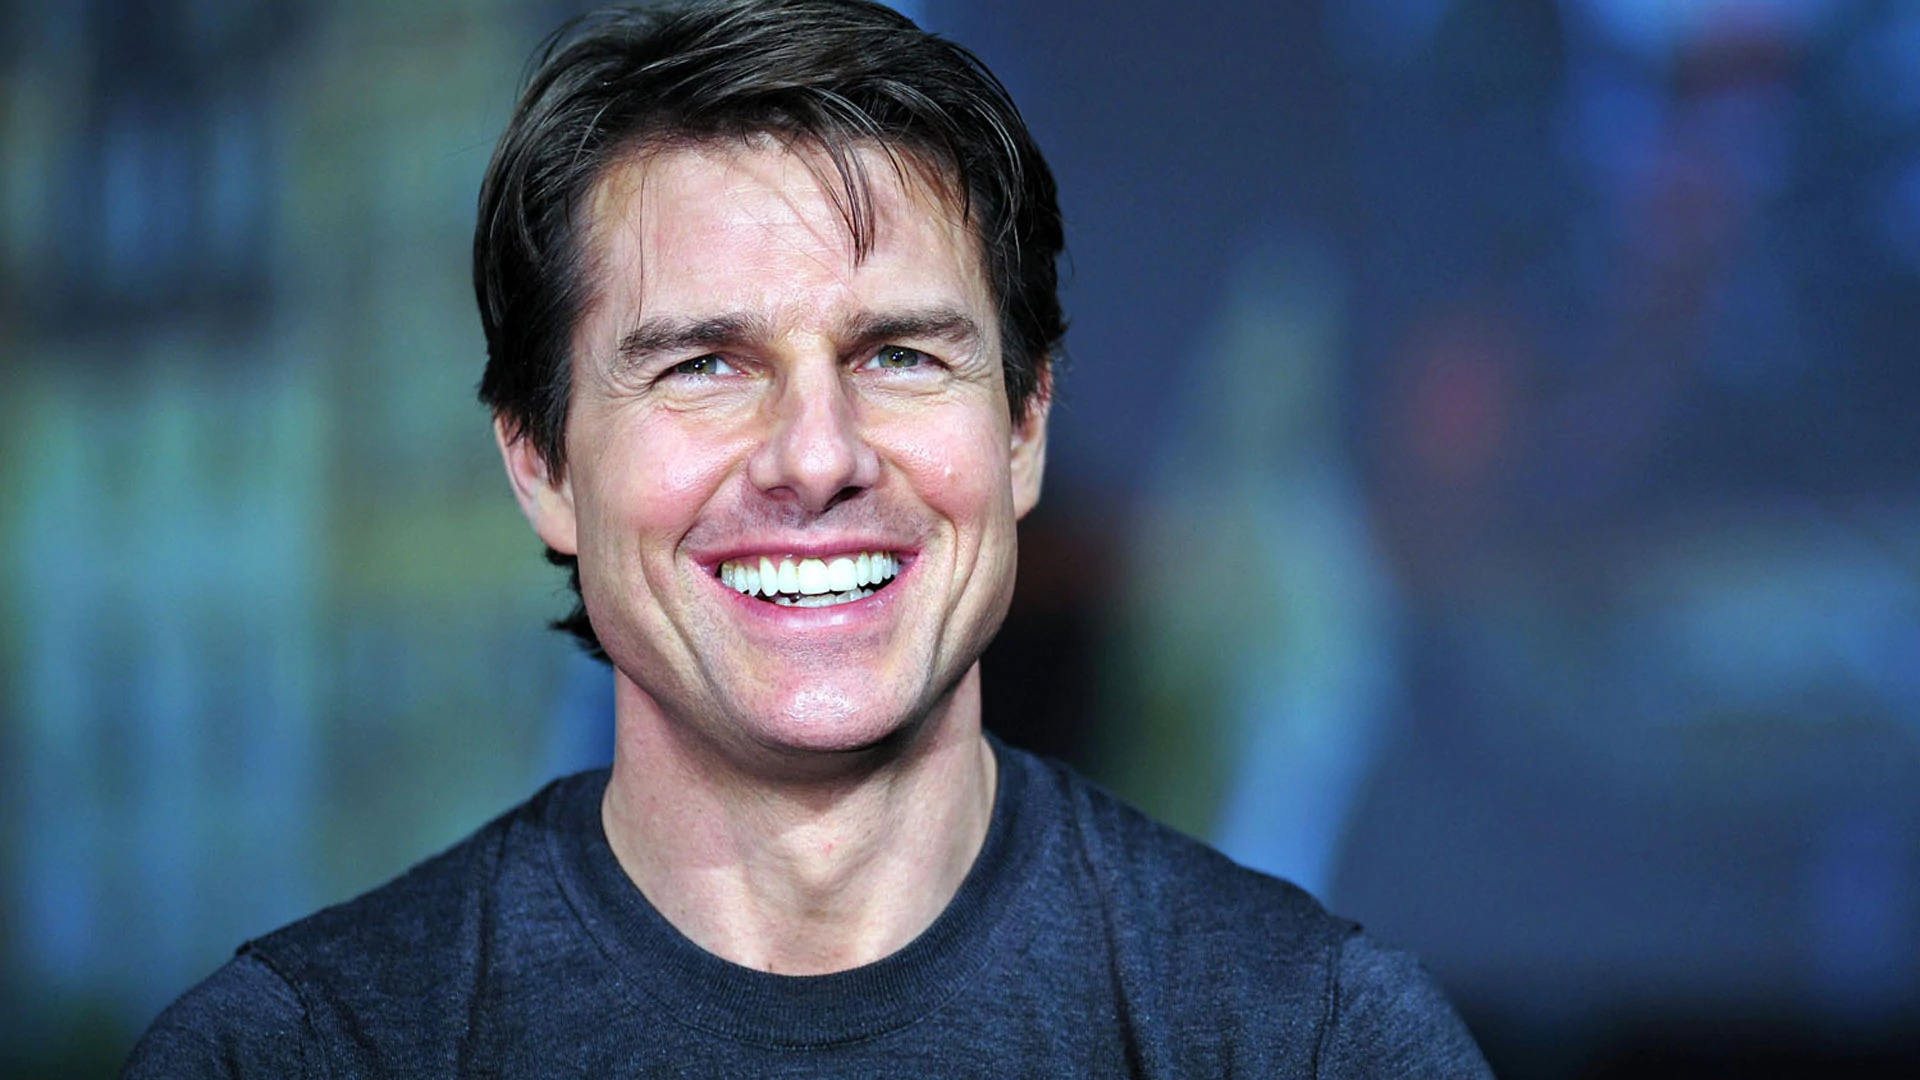 El sospechoso perfil “deepfake” de Tom Cruise que confundió a todos (VIDEO)